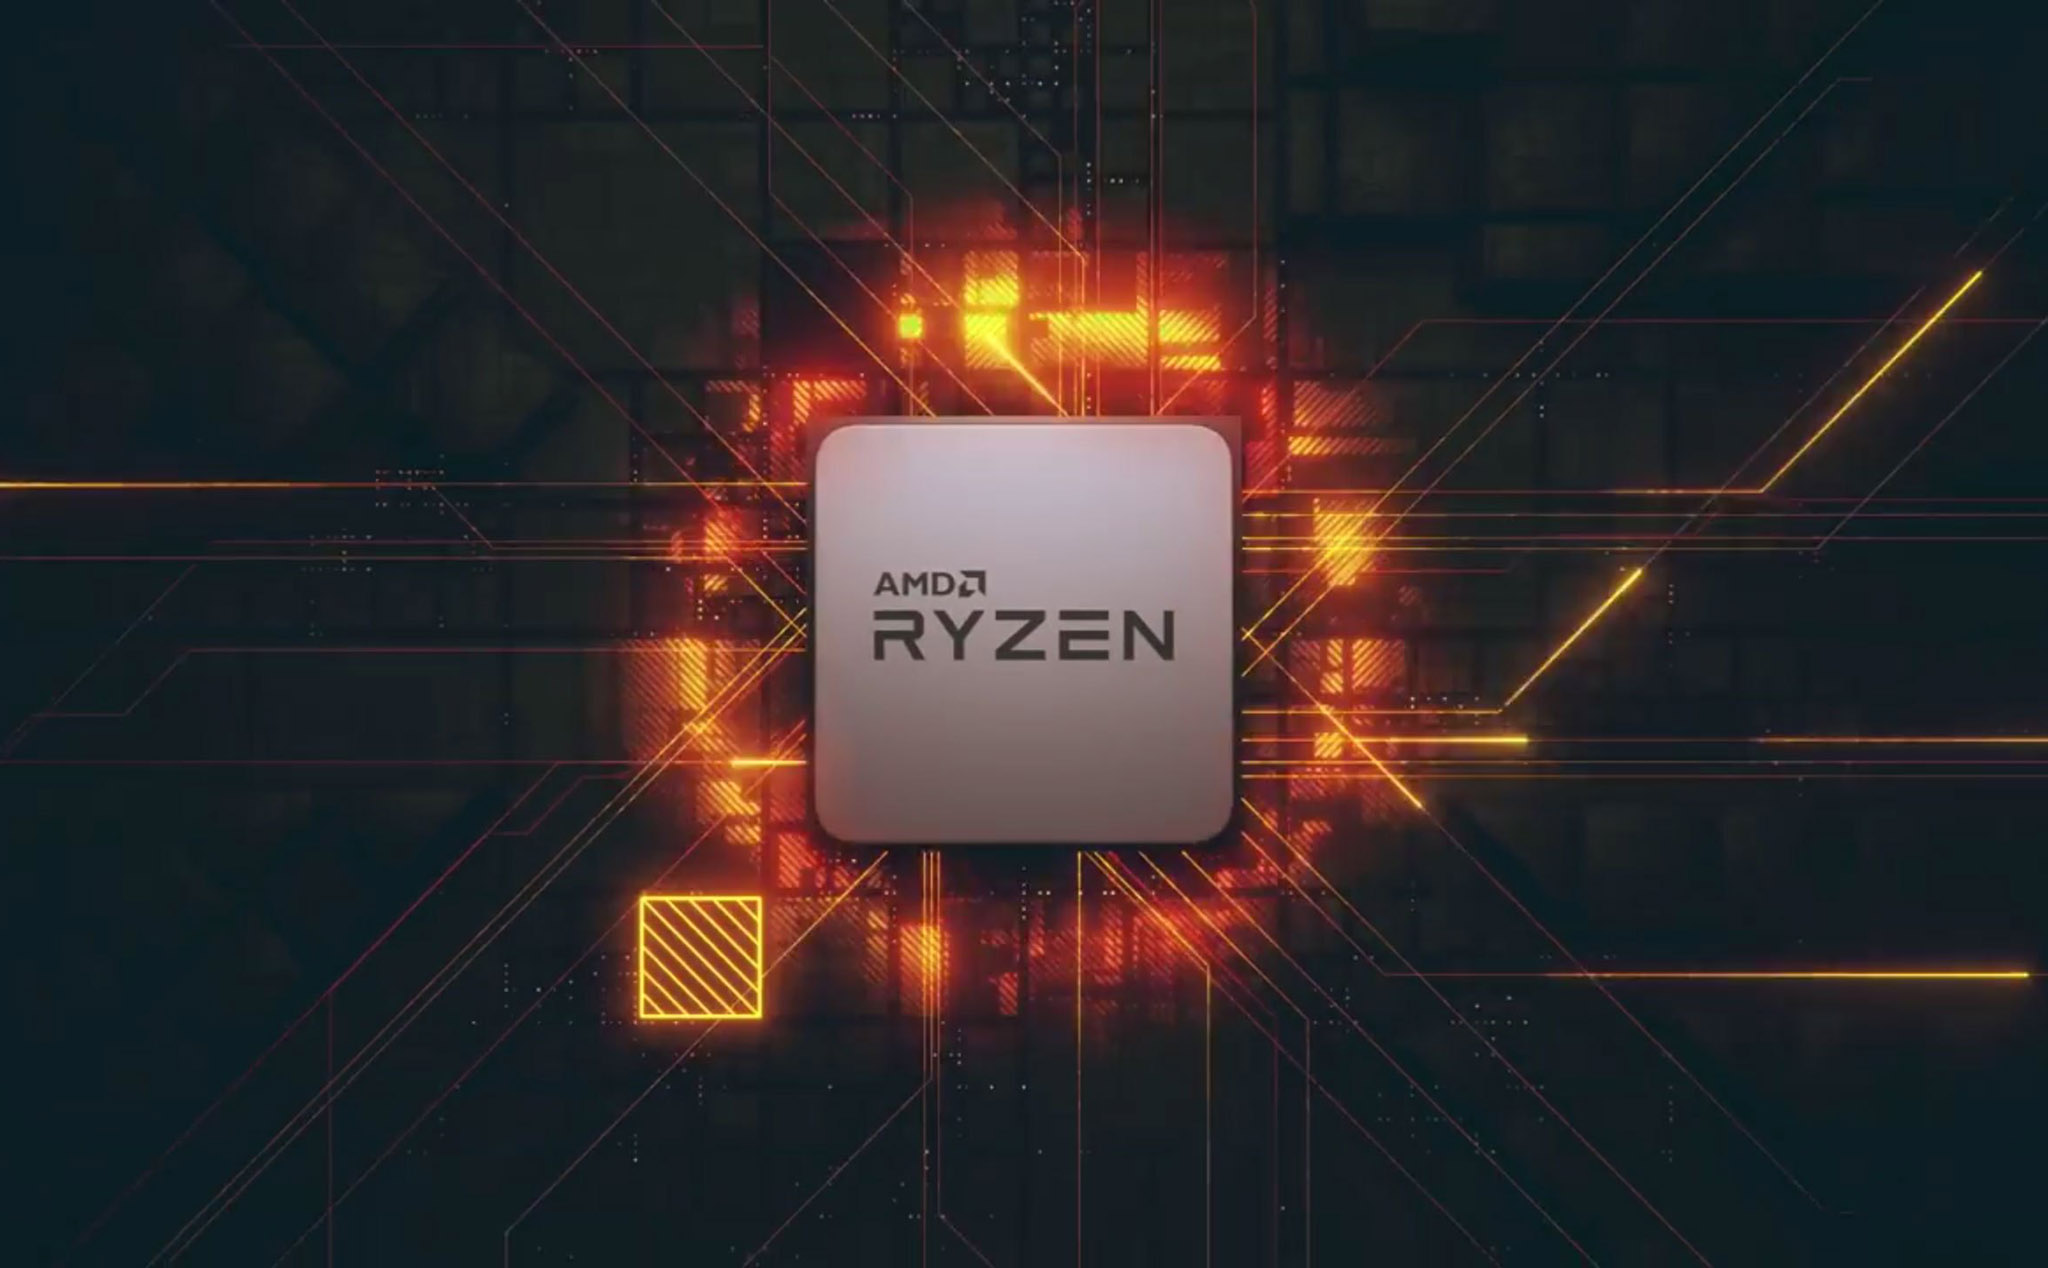 Thế hệ Ryzen 3000 tiếp tục dùng socket AM4, X570 sẽ hỗ trợ PCIe 4.0